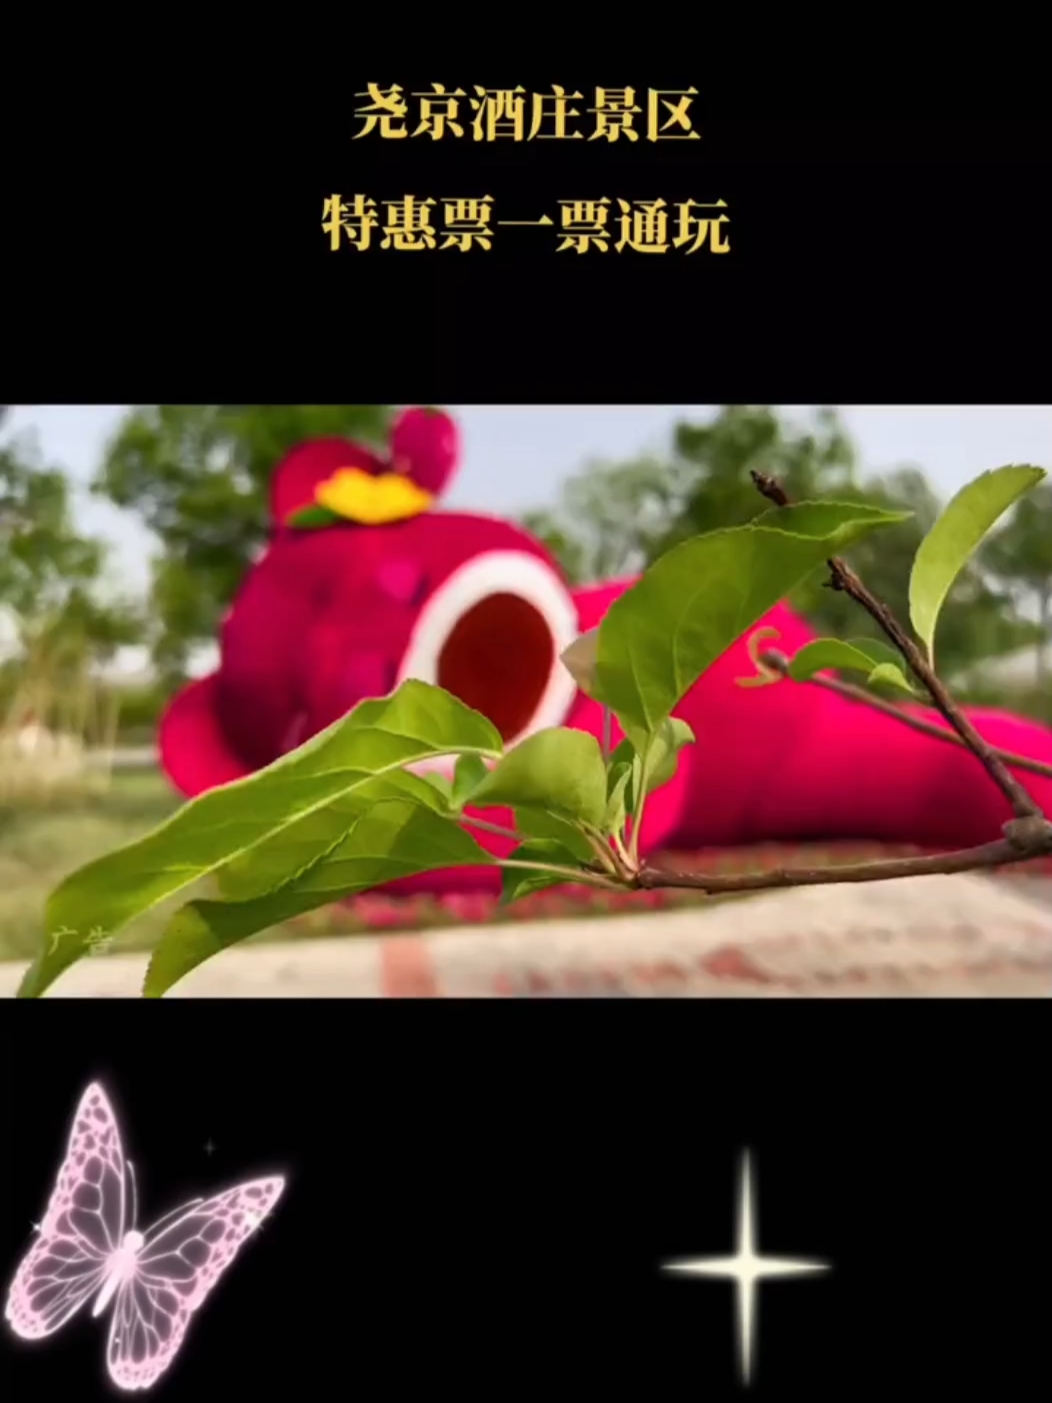 尧京酒庄景区5月1日正式登场，巨型草莓熊+天空之伞+网红火山